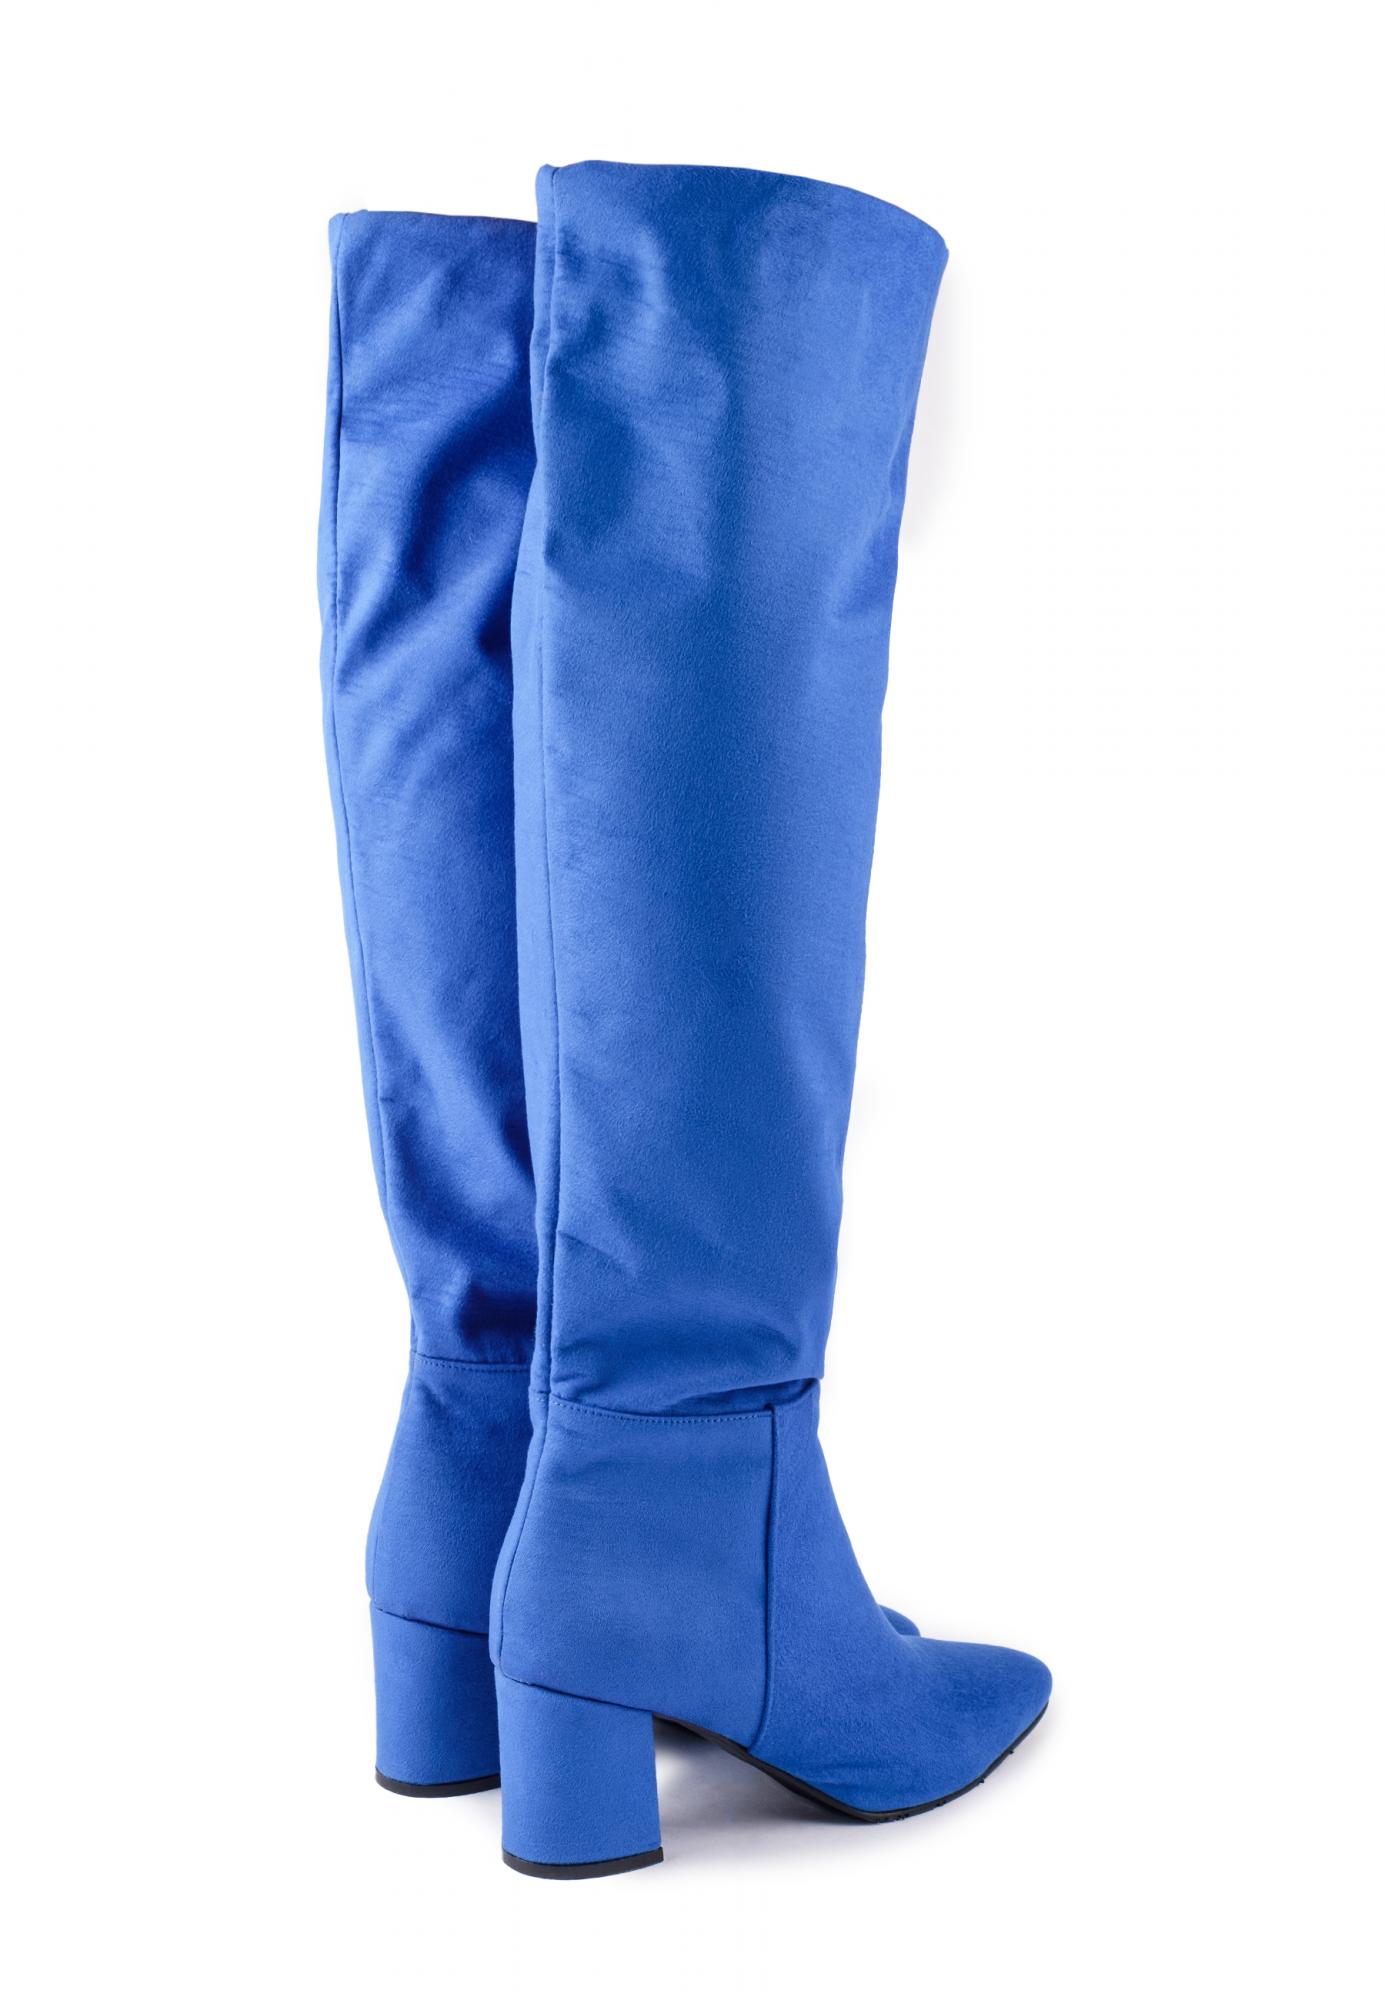 Women boots D205 - BLUE